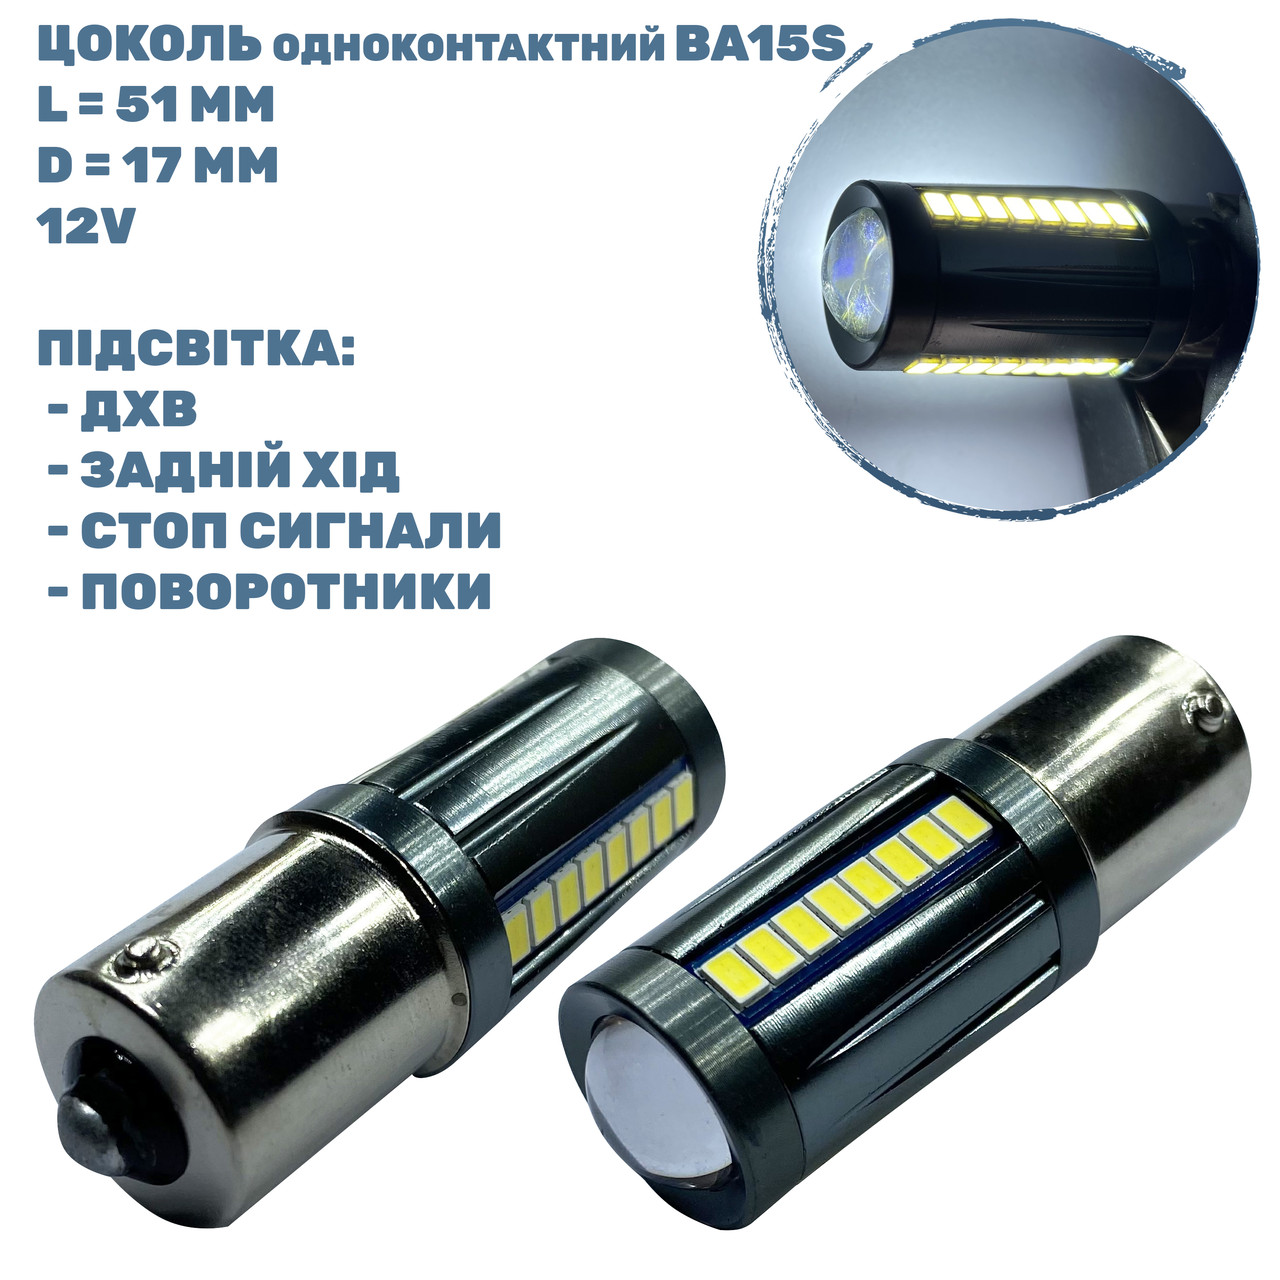 Лампа LED цоколь одноконтактний BA15S; 3W; 12-24-V; 27 діодів;D-17 mm; L-51 mm (T20-B15-027W3020P) (уп. 10 шт)